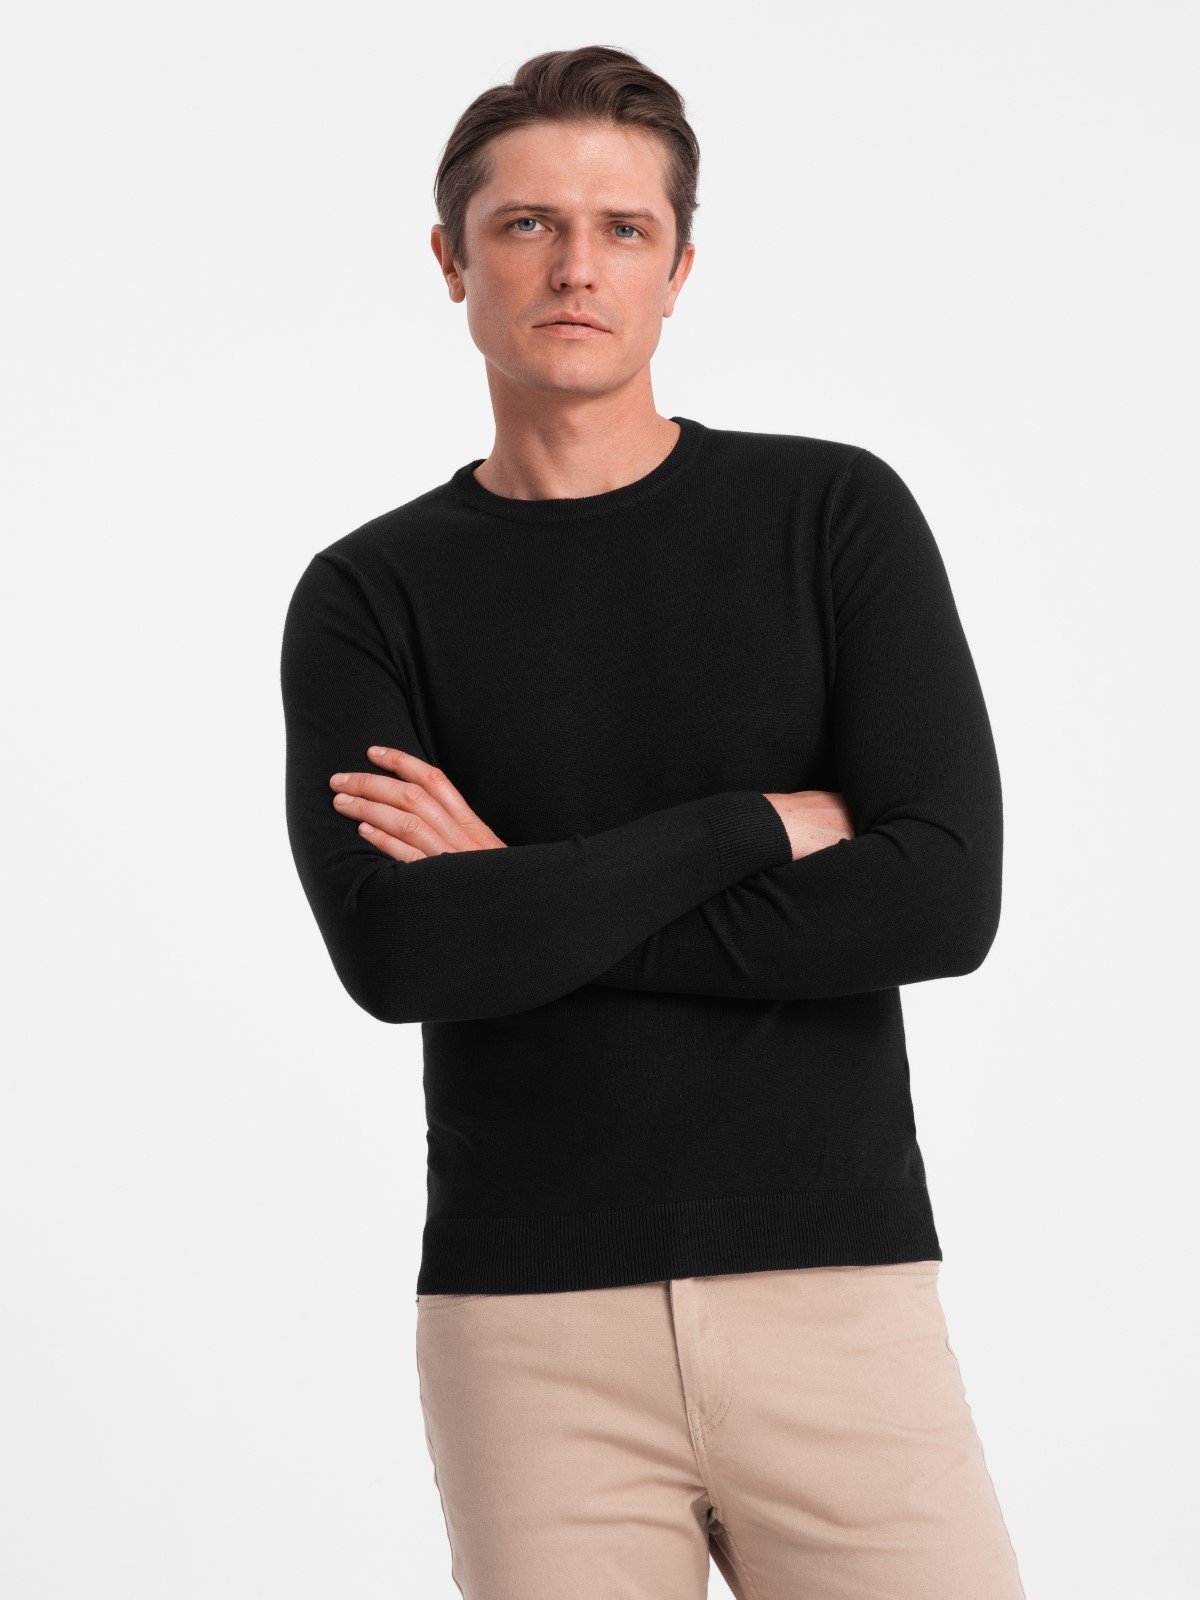 Classic men's sweater with round neckline - black V2 OM-SWBS V2 OM-SWBS - 0106